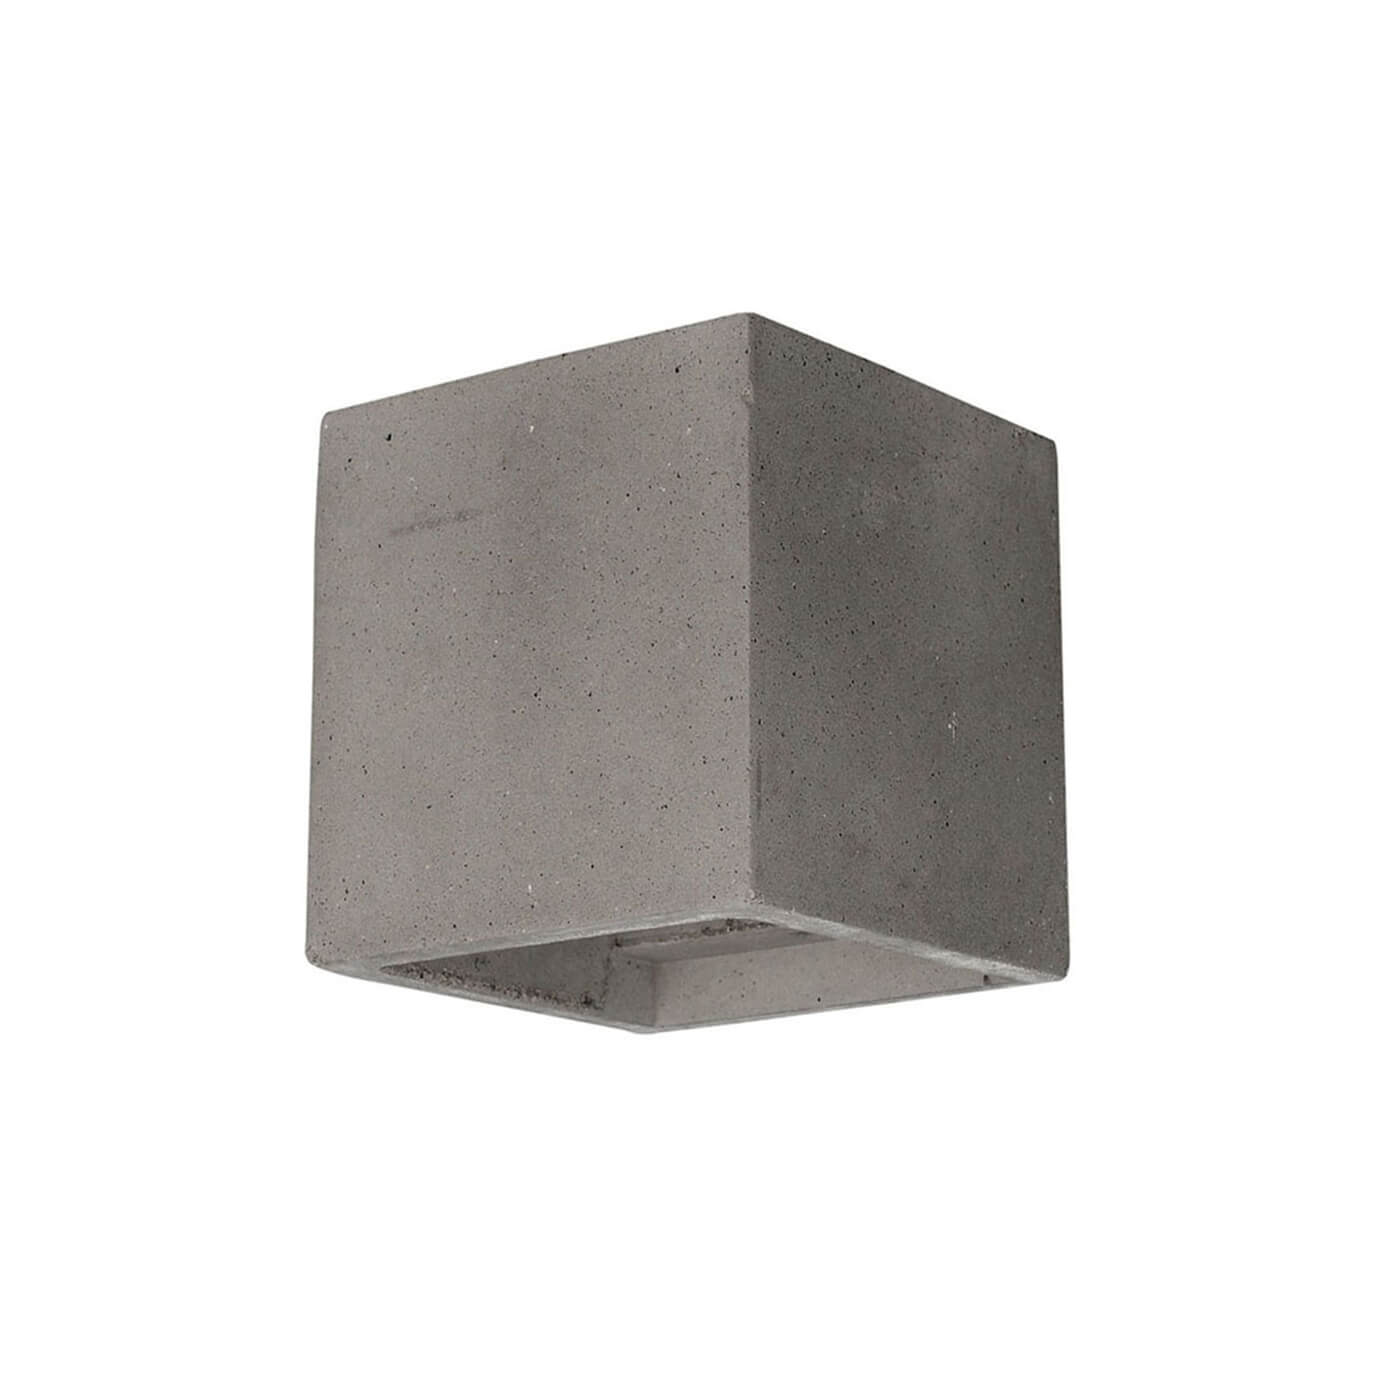 Cauti o aplica gri CERAMIC 11 din ciment  - pentru sufragerie sau dormitor, design modern, minimalist?